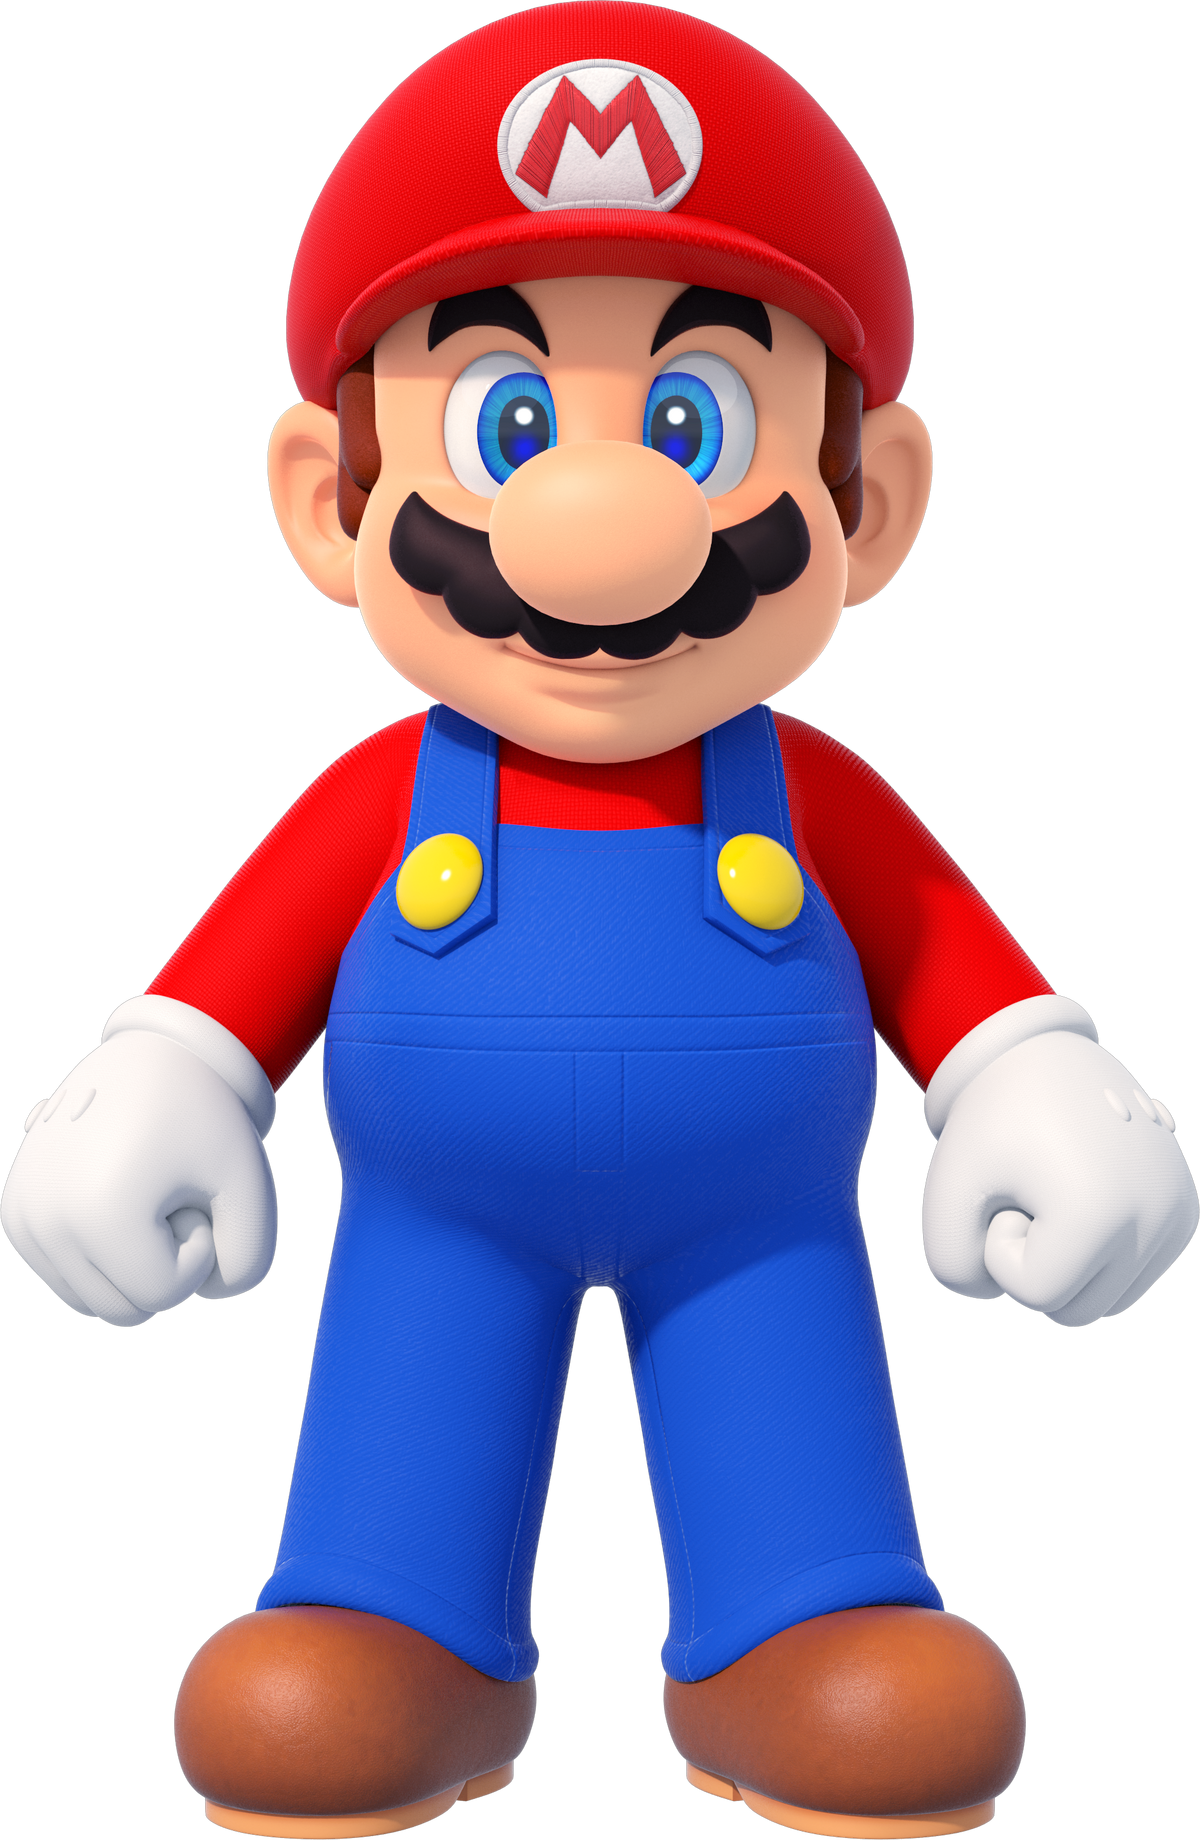 World of Nintendo - Figurine Super Mario au choix, série 13